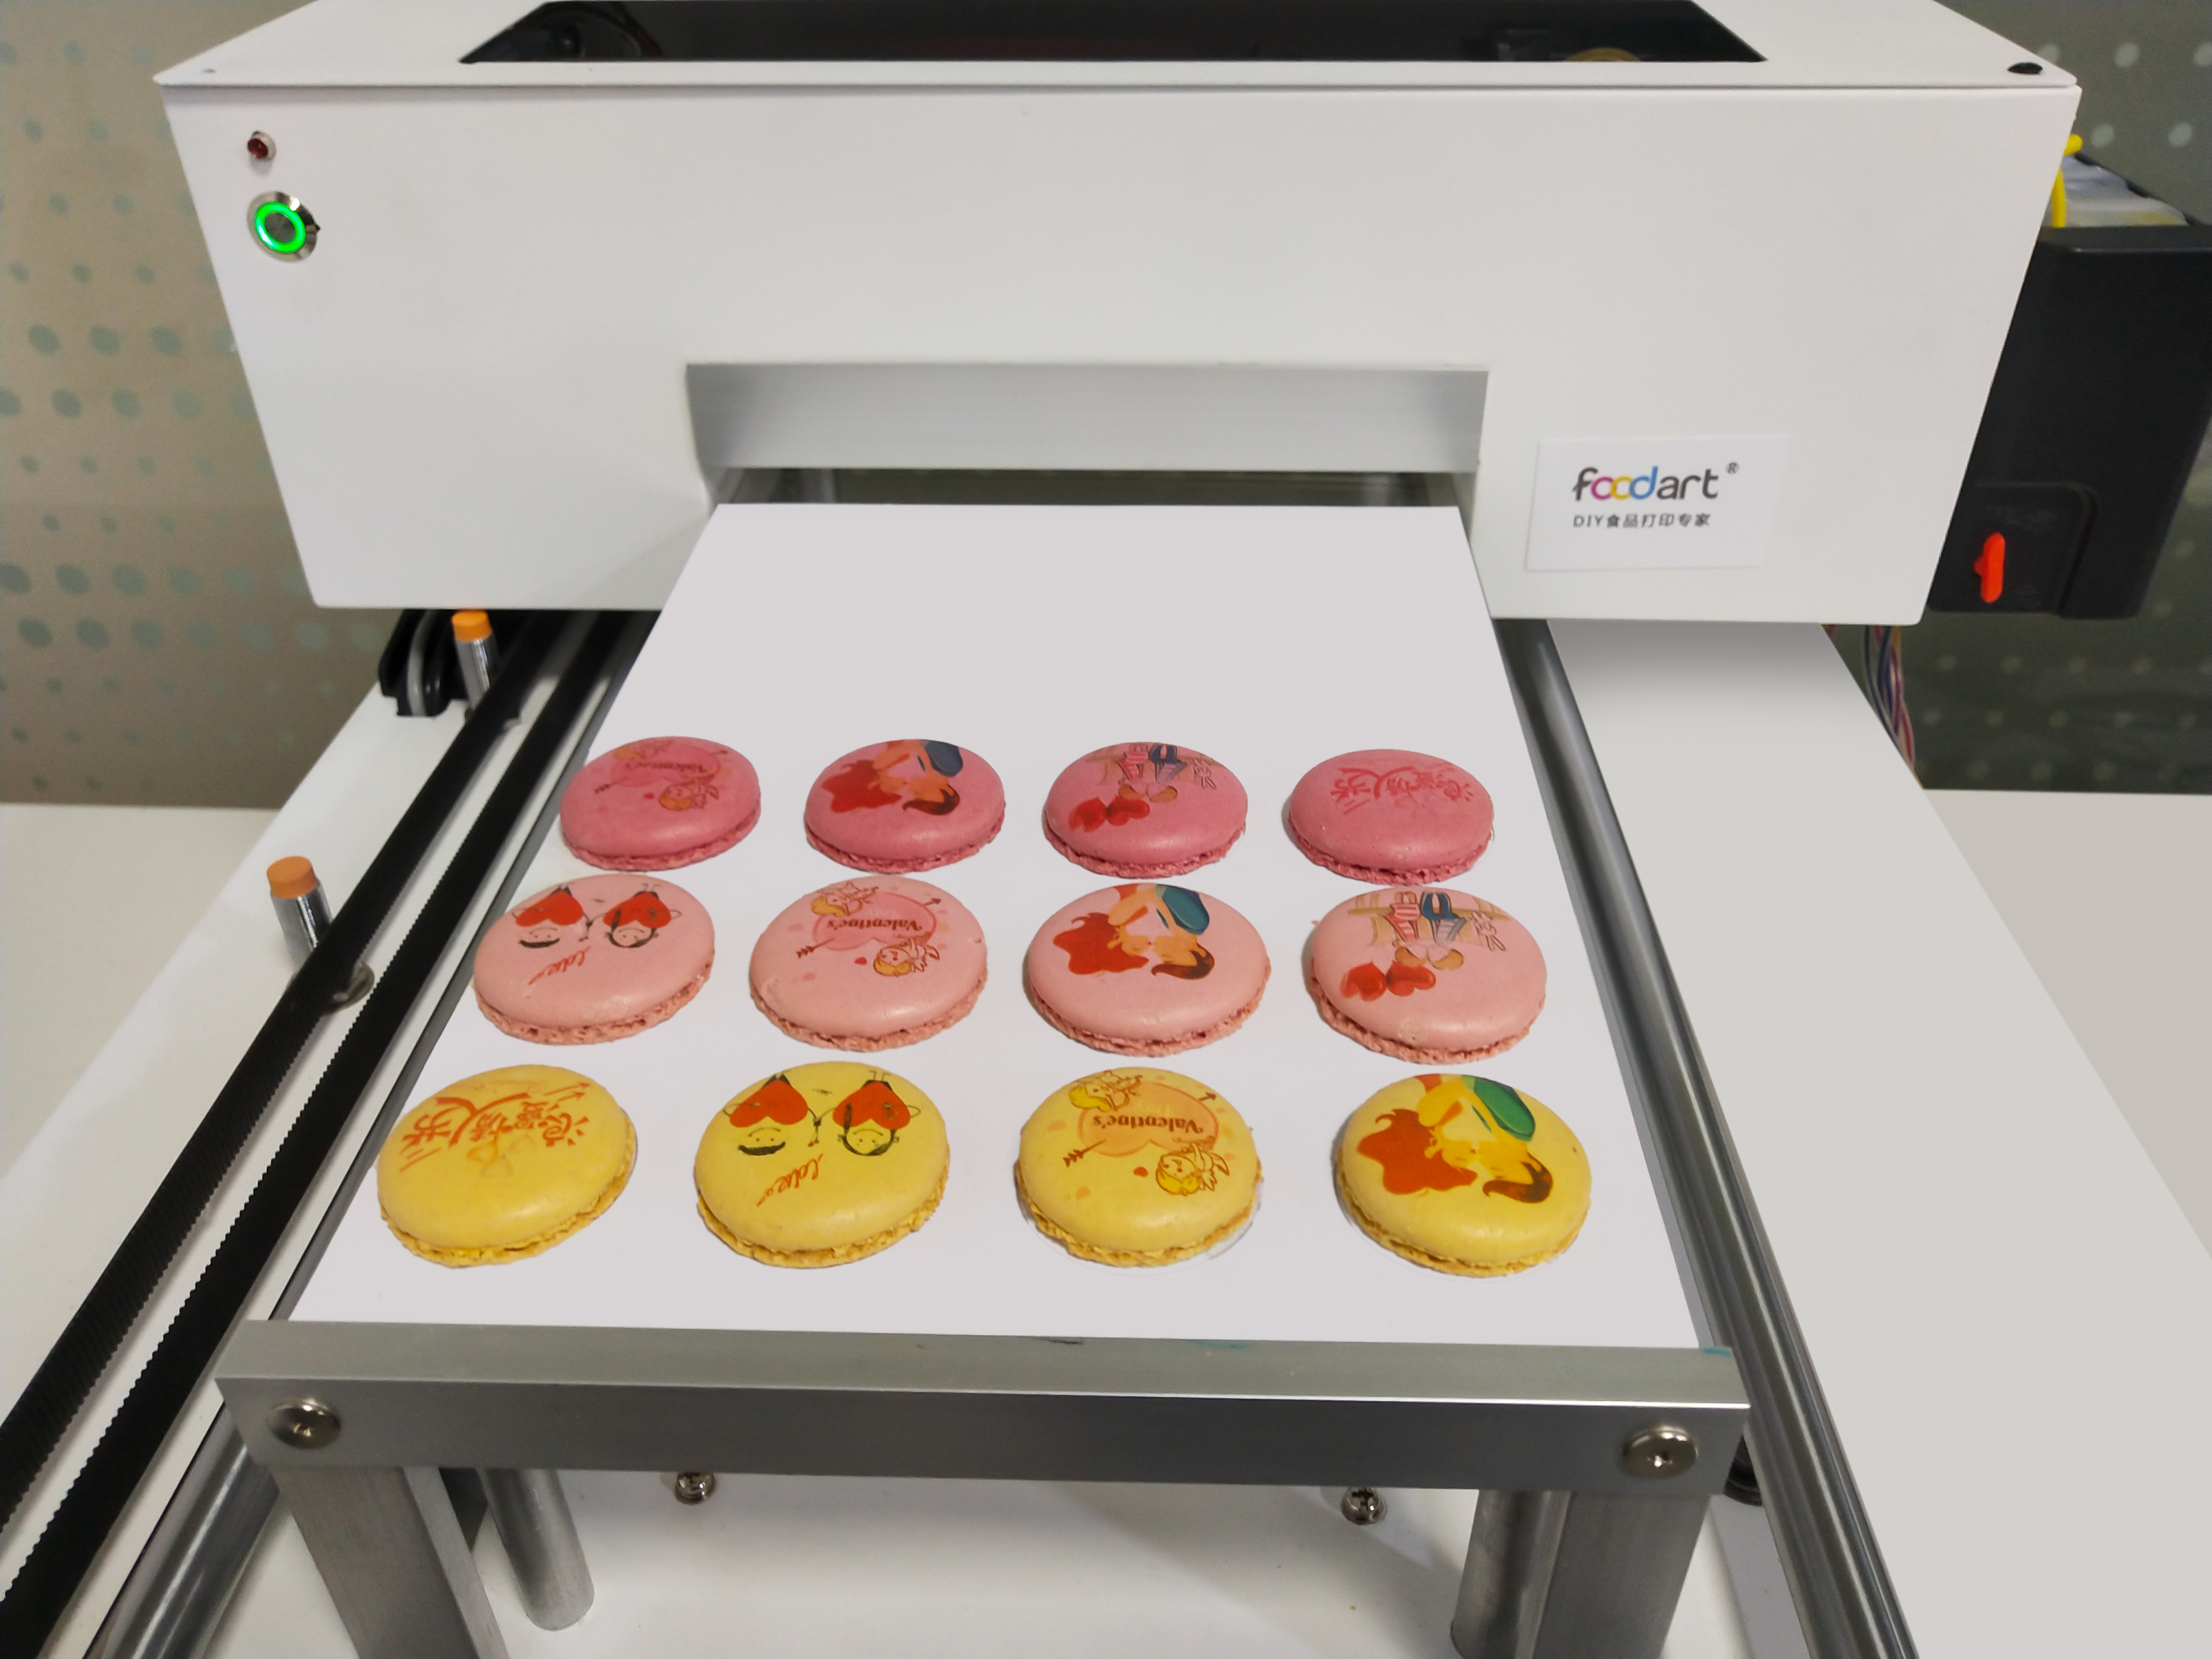 食品打印机是否支持与其他厨房设备的联动操作，以提升整体工作效率？